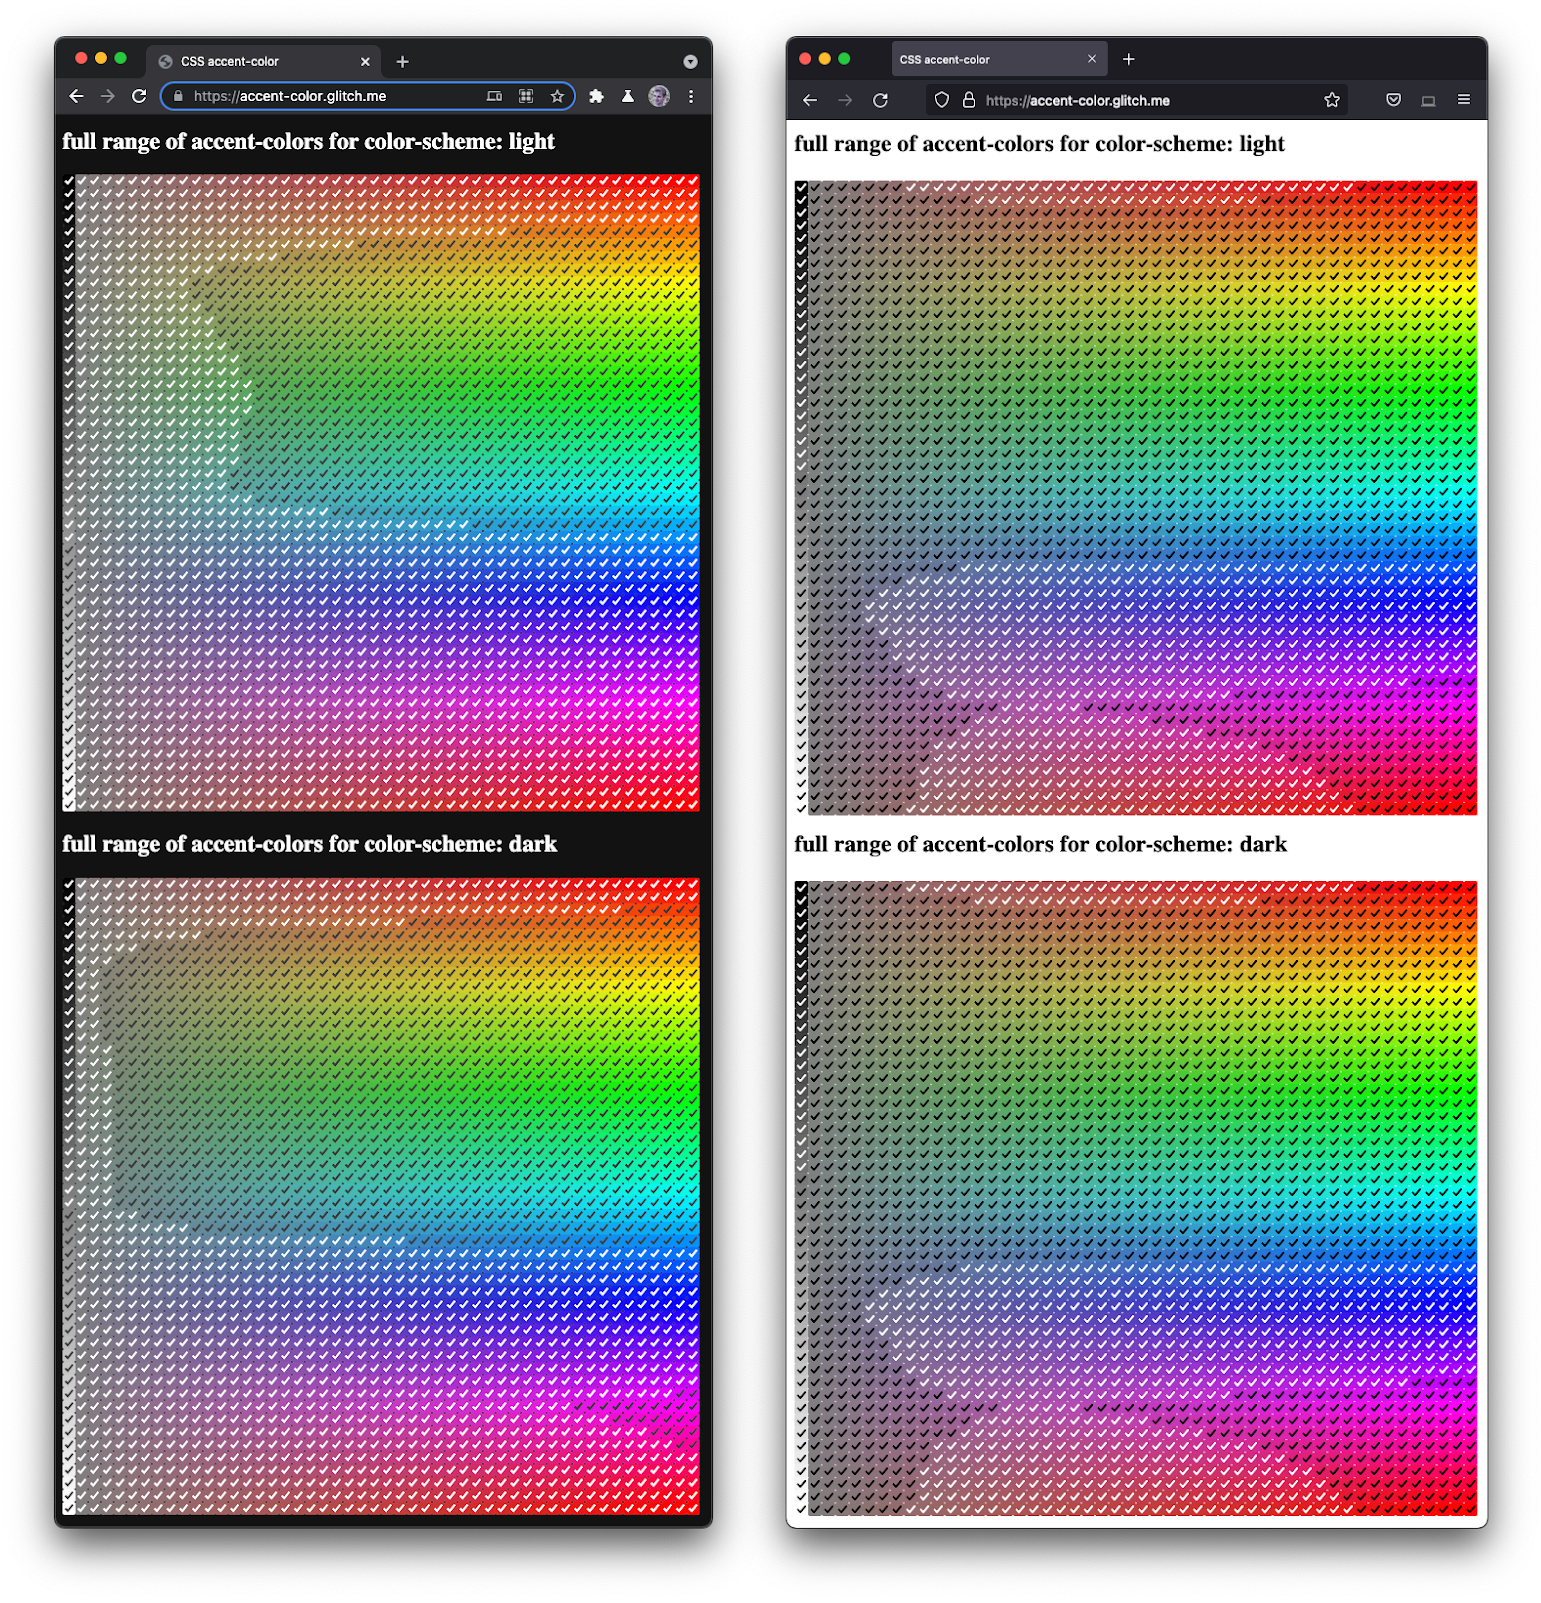 تصویری از فایرفاکس و کرومیوم در کنار هم که طیف کاملی از چک باکس ها را در رنگ ها و تاریکی های مختلف ارائه می دهد.